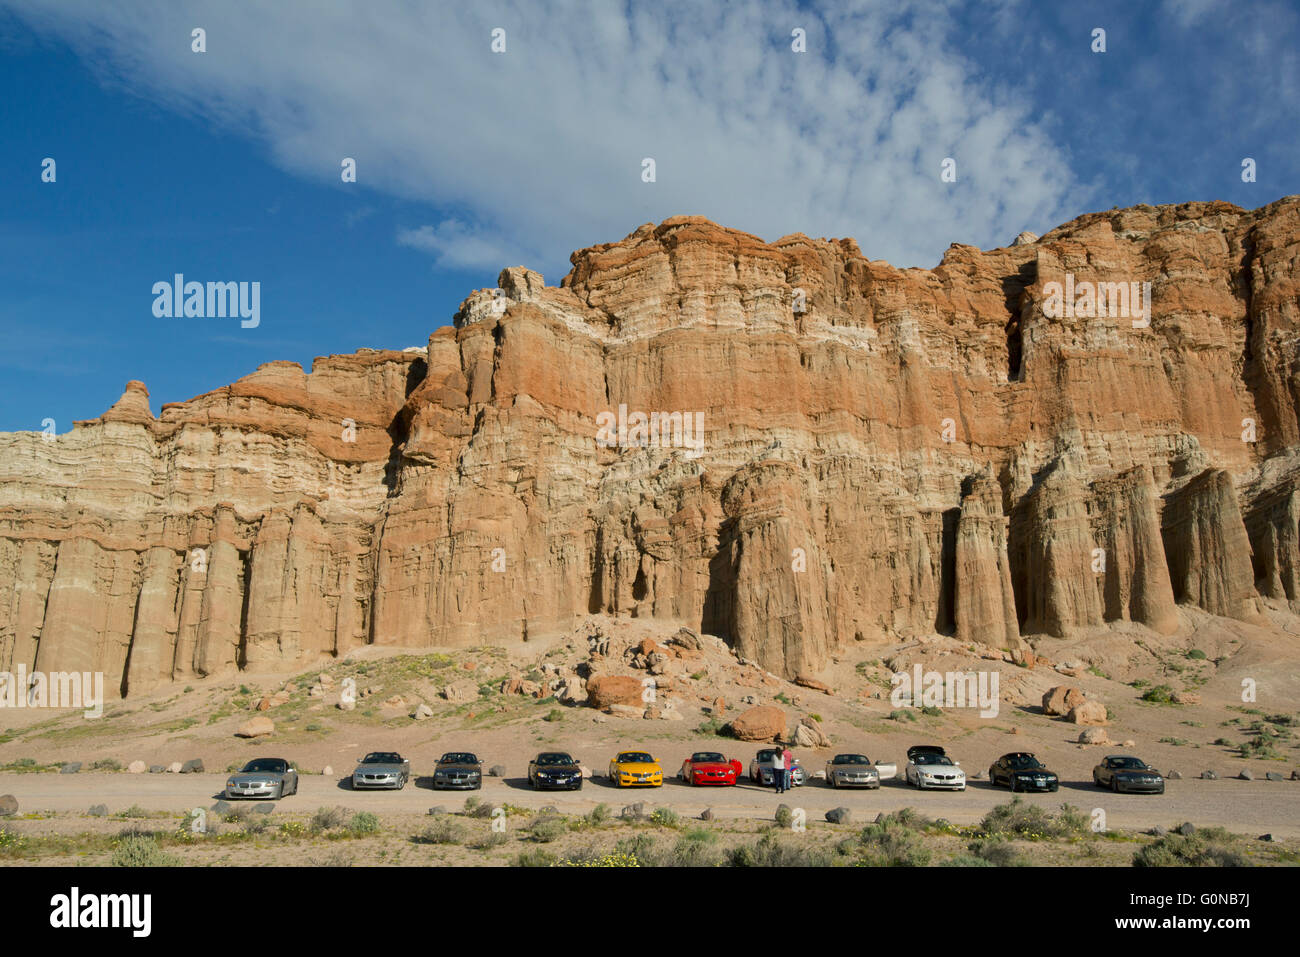 Rallye de voitures de sport s'arrête au Red Rock Canyon State Park, le désert de Mojave, Californie Banque D'Images